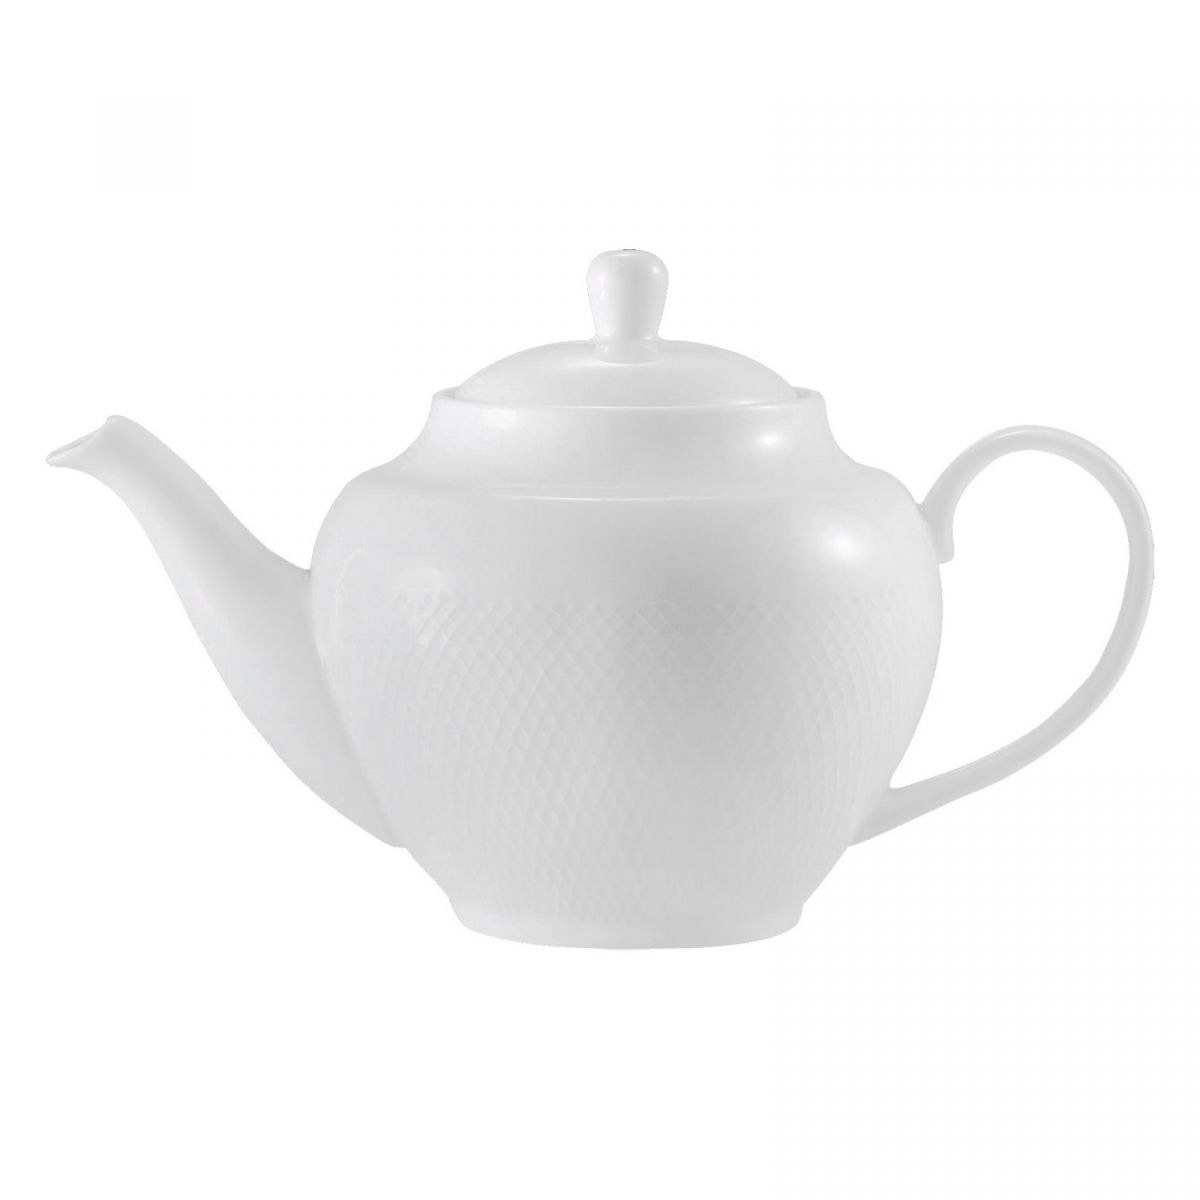 Заварочный чайник TUDOR ENGLAND Royal Sutton 0,99 л чайник заварочный tudor england 1 55 л